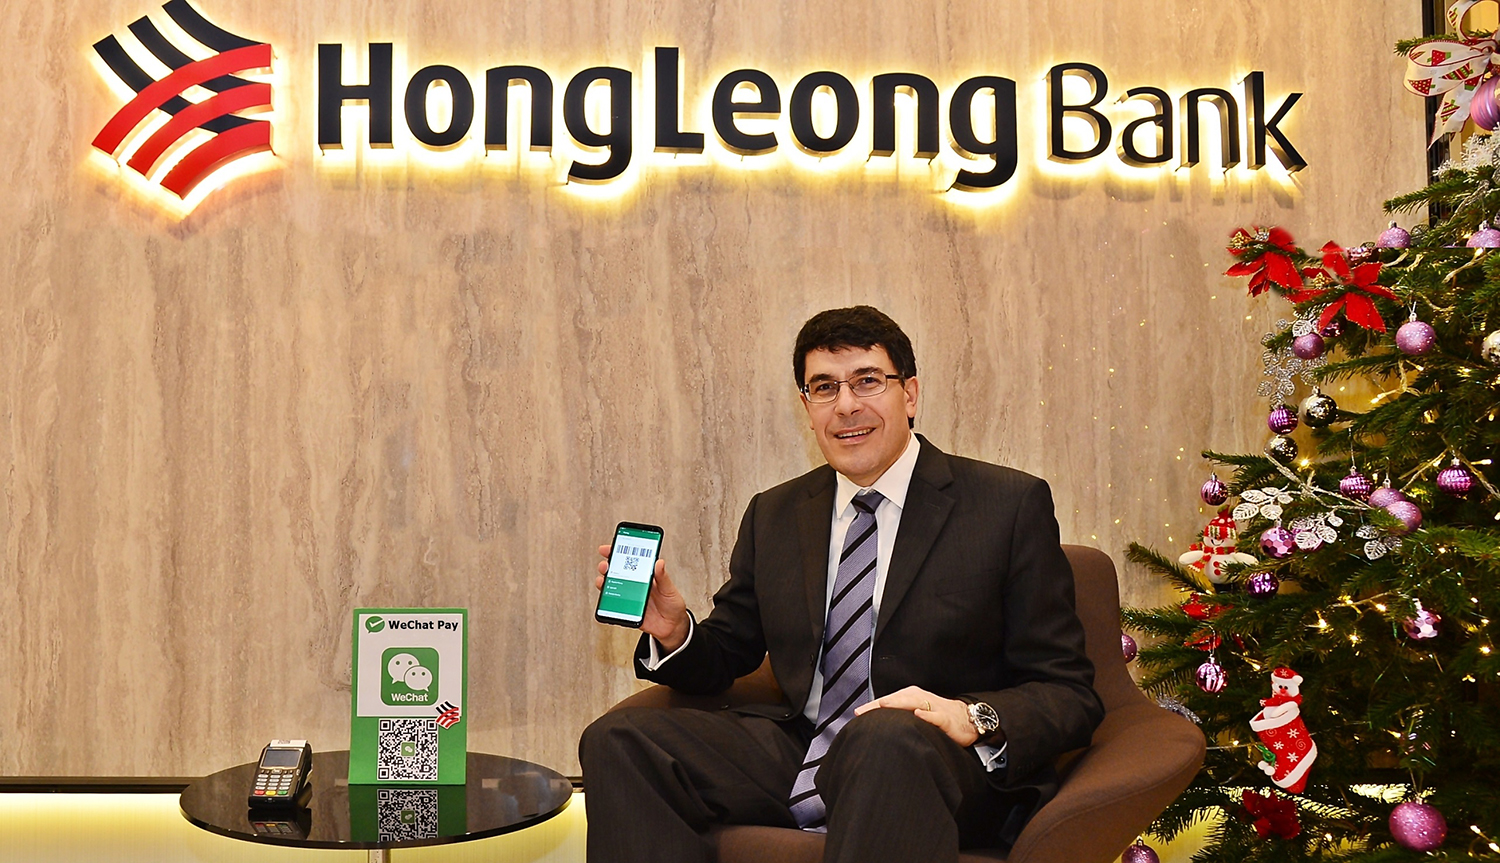 Hong leong bank debit card